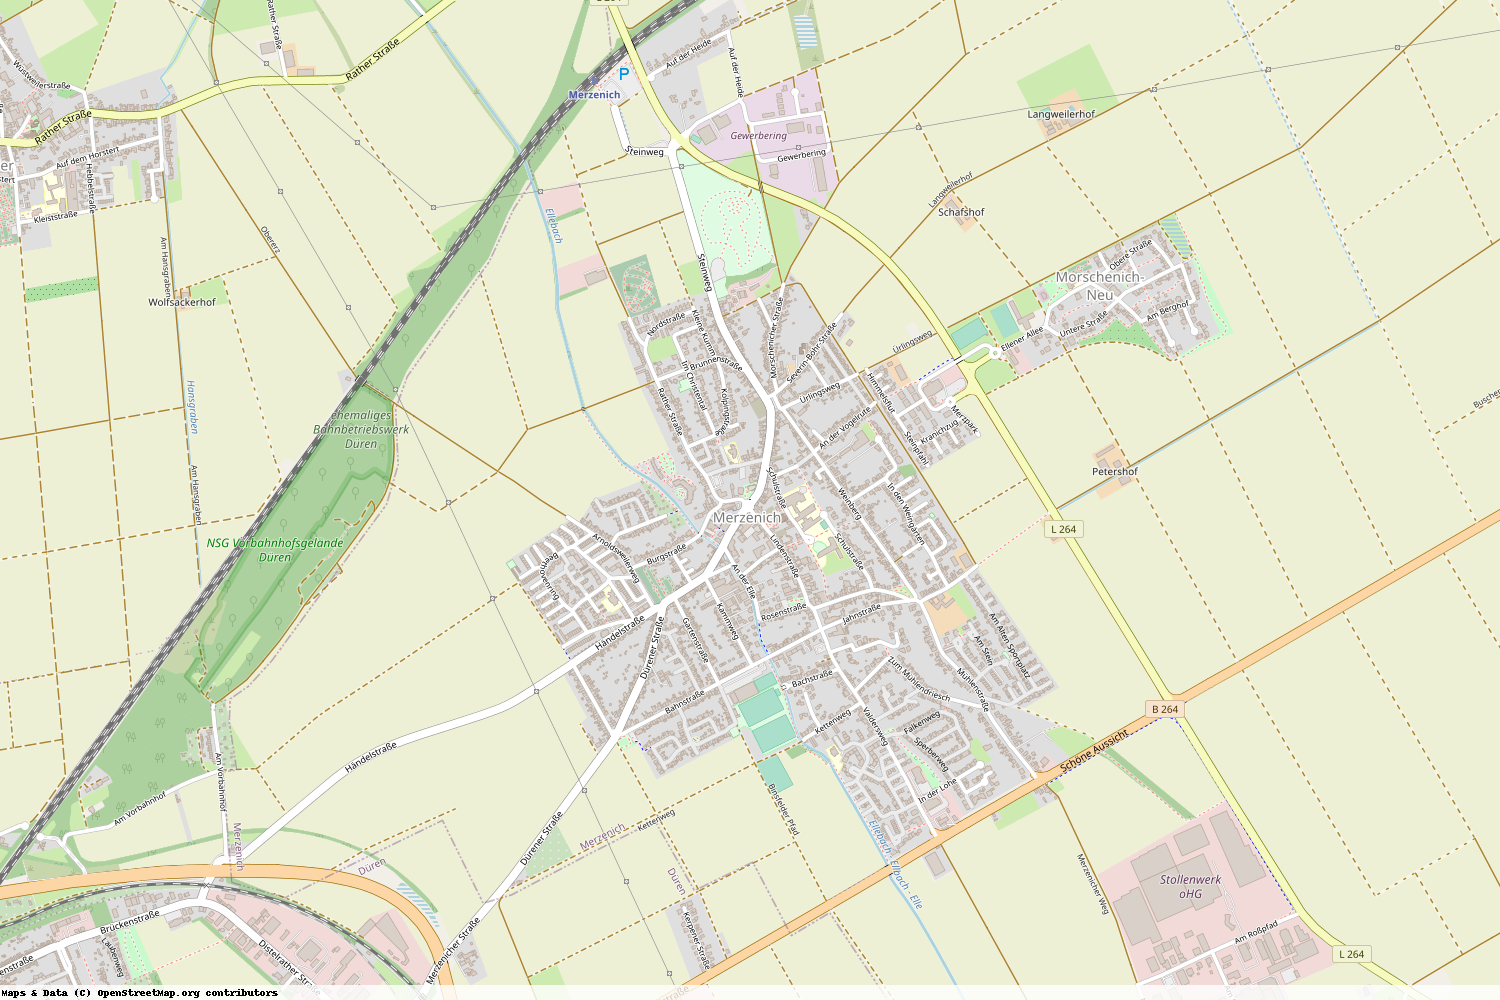 Ist gerade Stromausfall in Nordrhein-Westfalen - Düren - Merzenich?